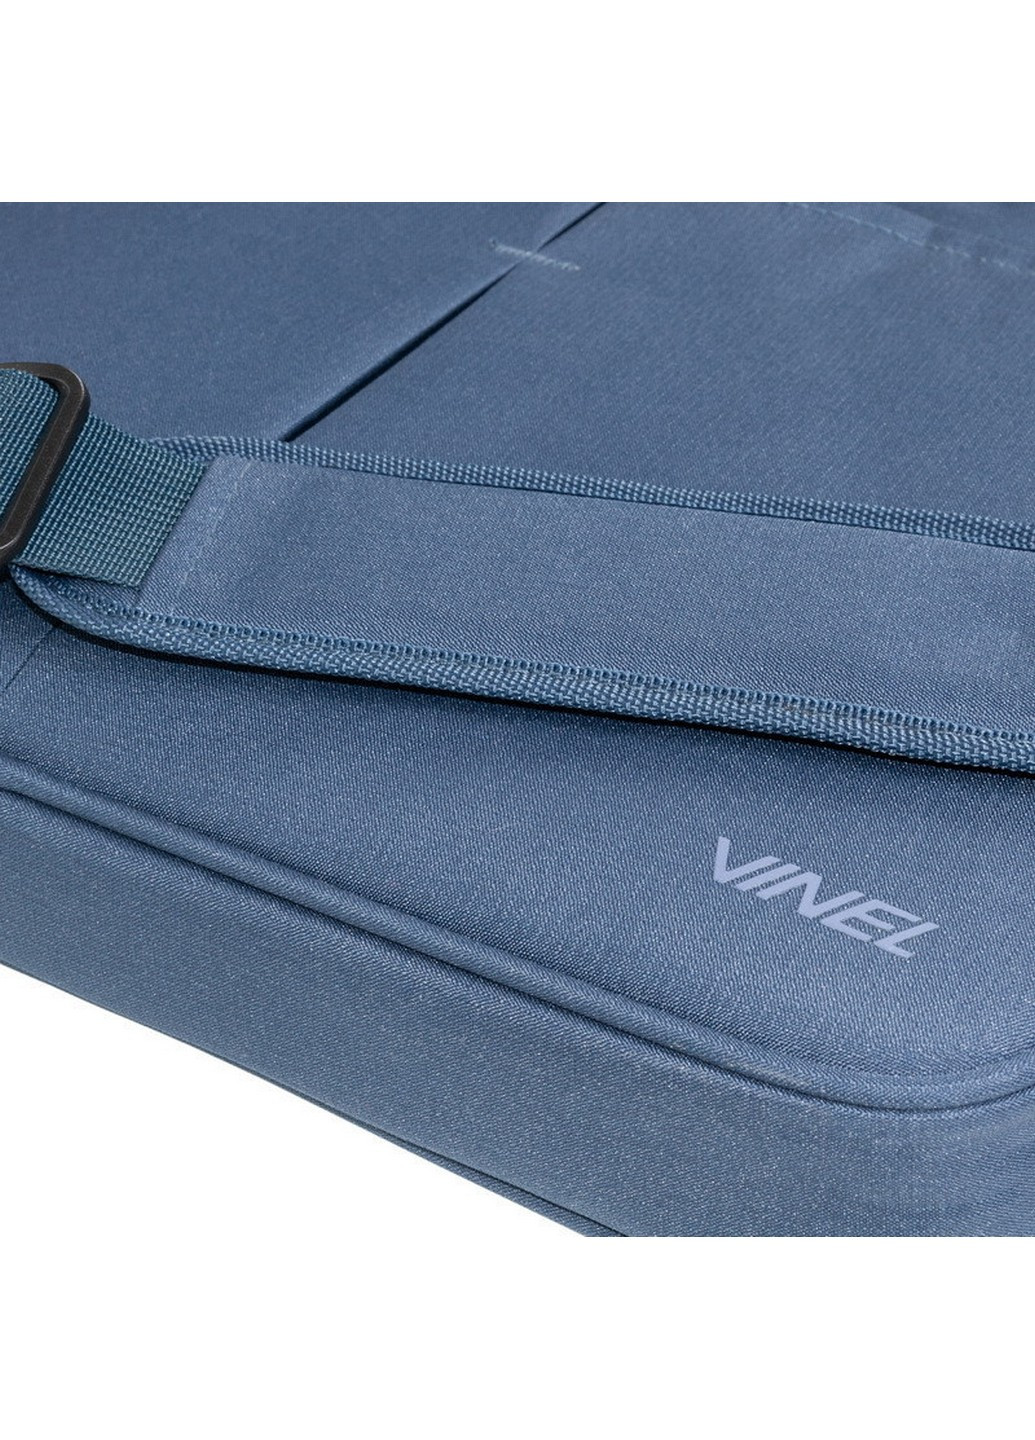 Легкая сумка для ноутбука 15,6-16 дюймов 41х29х5 см Vinel (258033655)